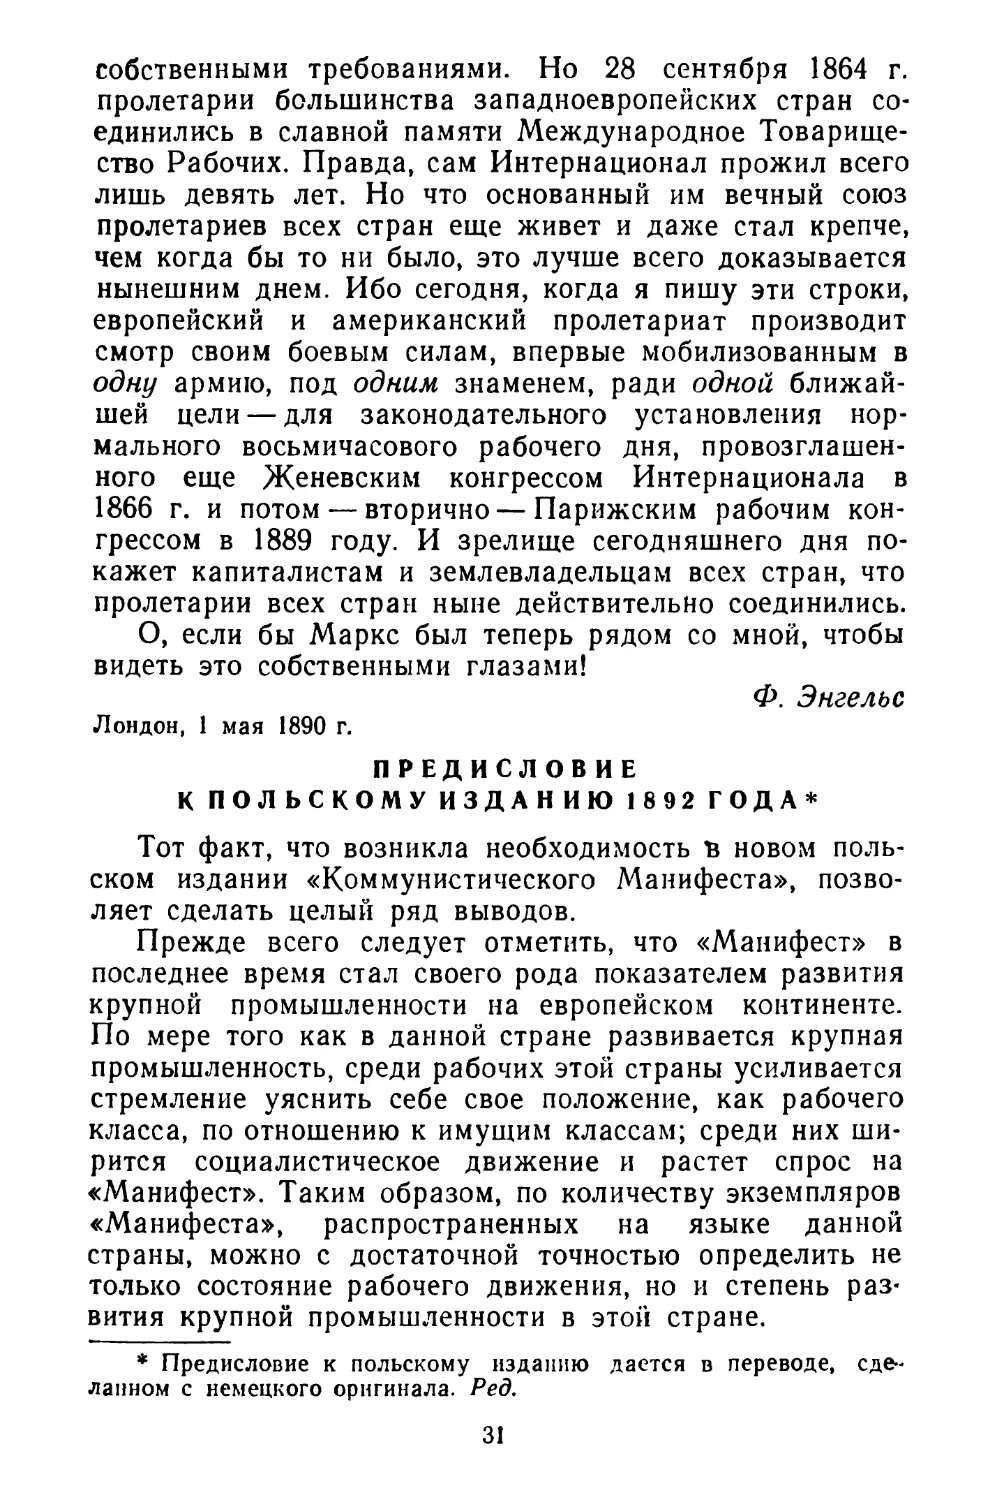 Предисловие к польскому изданию 1892 года